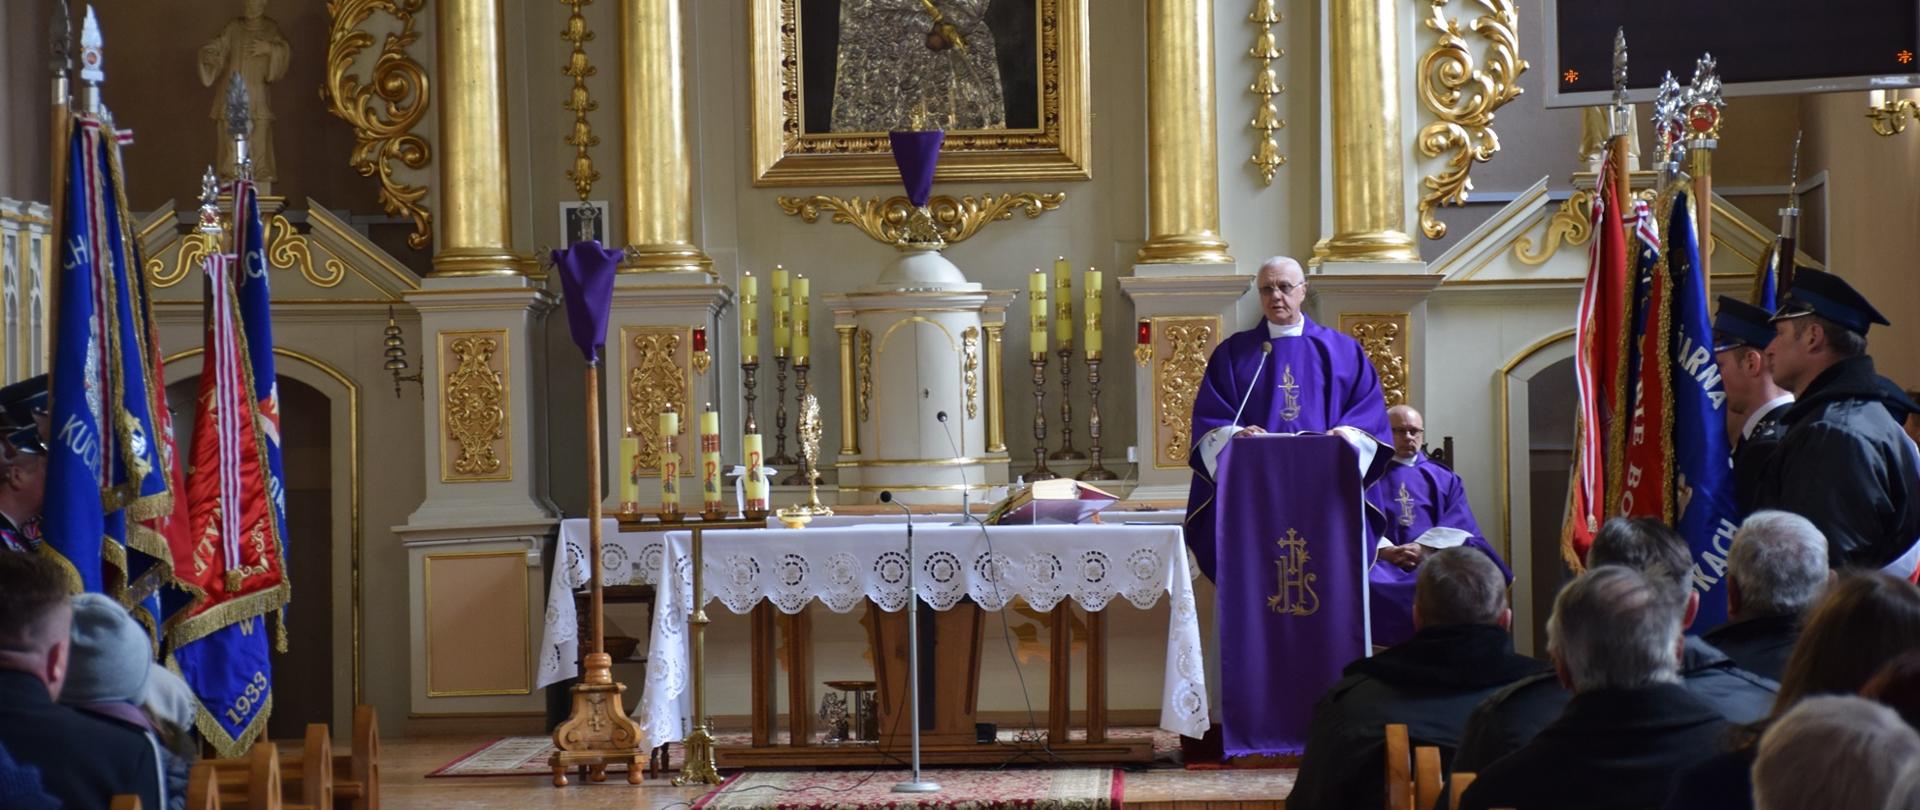 Ołtarz w Kościele, Na mównicy stoi ksiądz w szatach koloru fioletowego. Po bokach poczty sztandarowe.